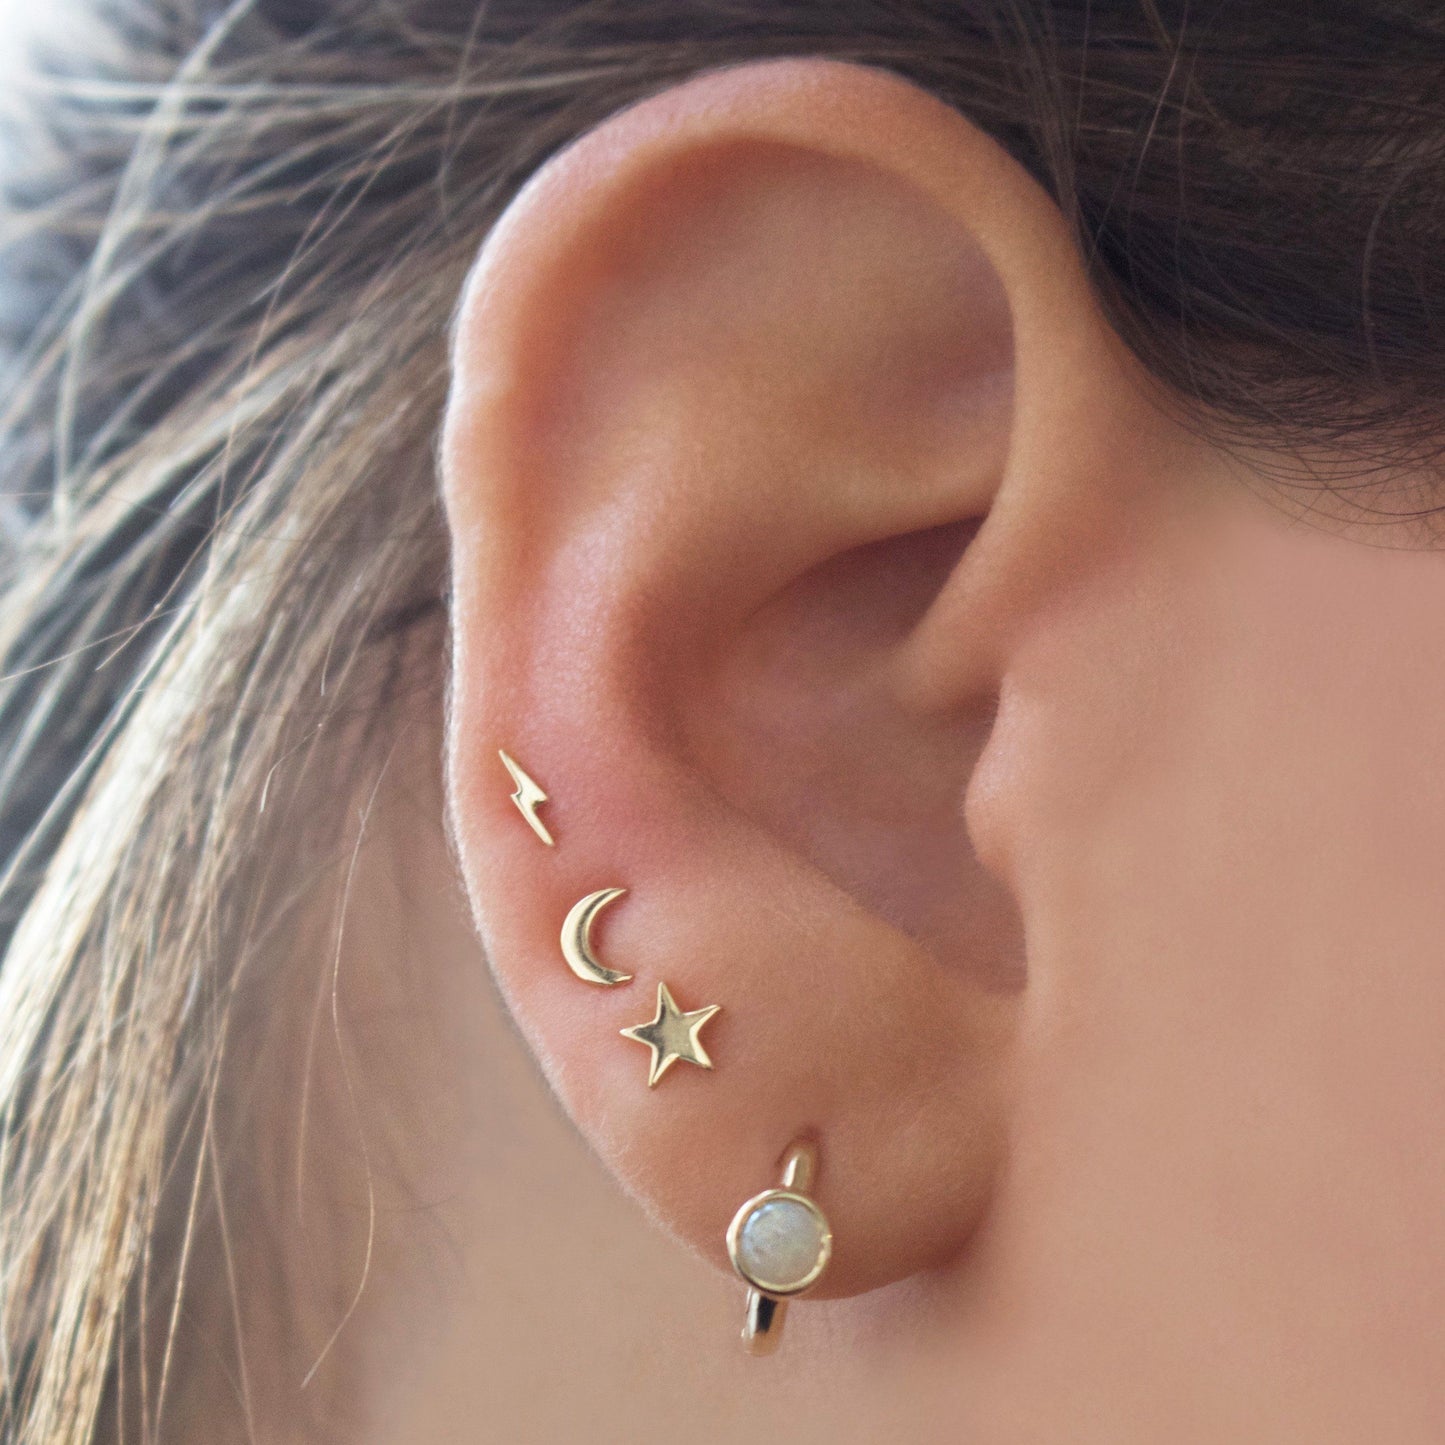 9k Solid Gold Crescent Moon Single Stud Earring Earrings Dwarkas 